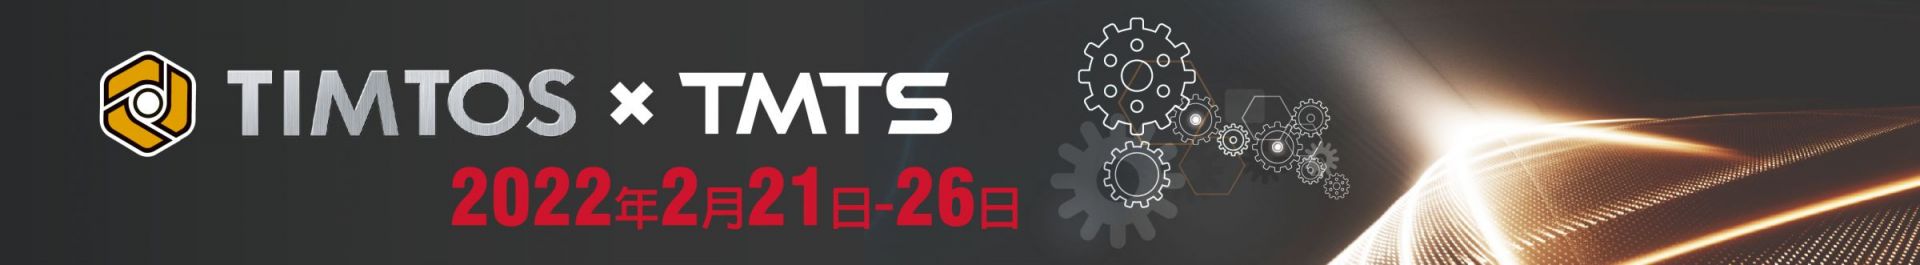 TIMTOS x TMTS 2022 台北国際工作機械展